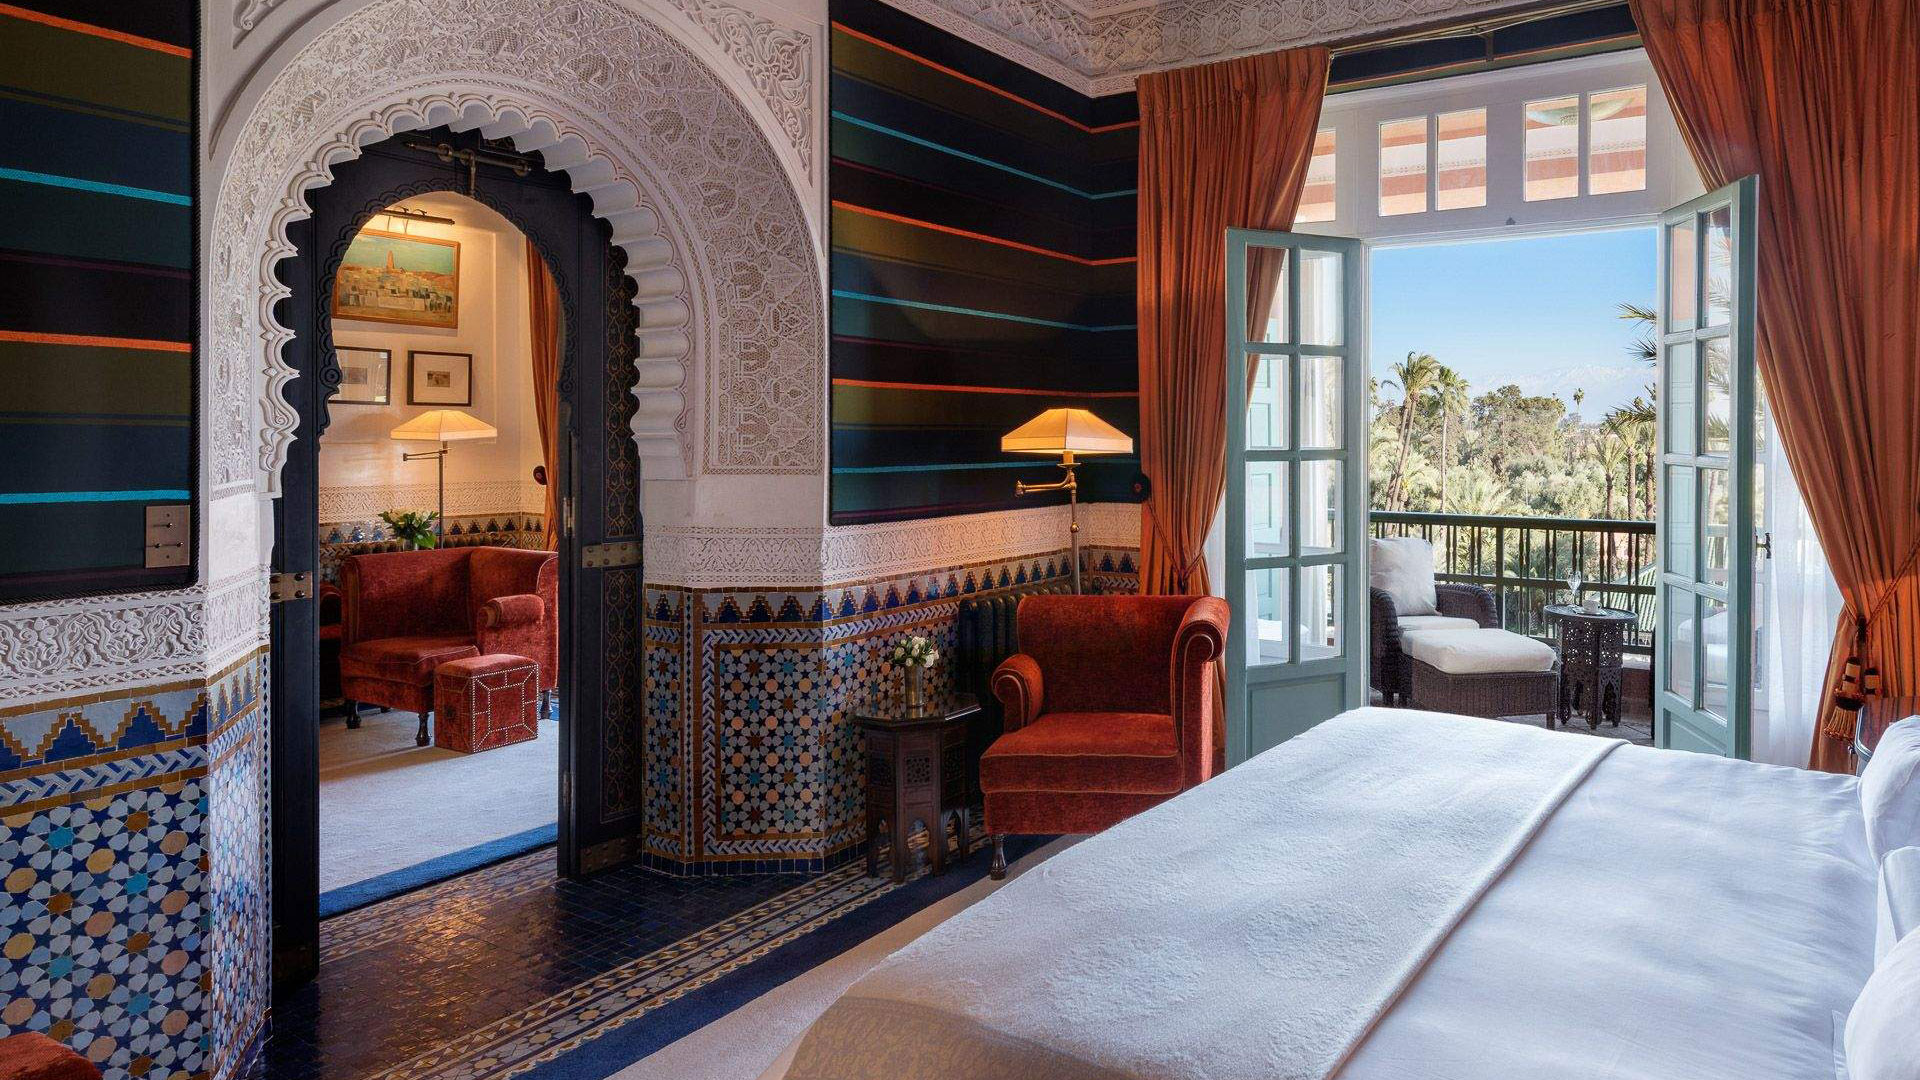 Hoteles del mundo: La Mamounia, Marruecos